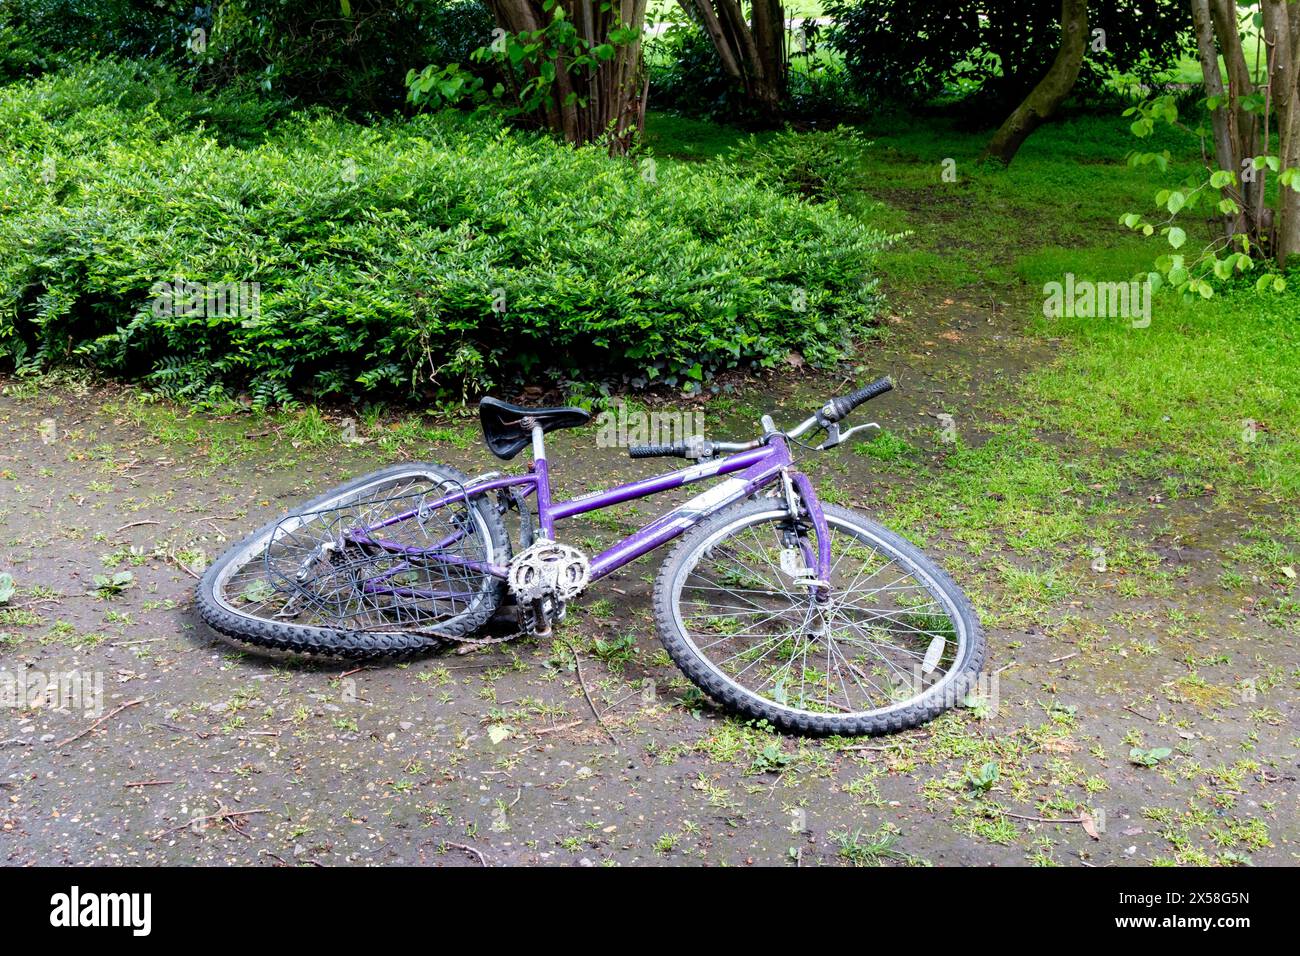 Verlassenes, kaputtes, lila Mountainbike, das auf einem schlammigen Boden liegt, umgeben von grünem Laub in einem Park. Cambridge, England, Großbritannien Stockfoto